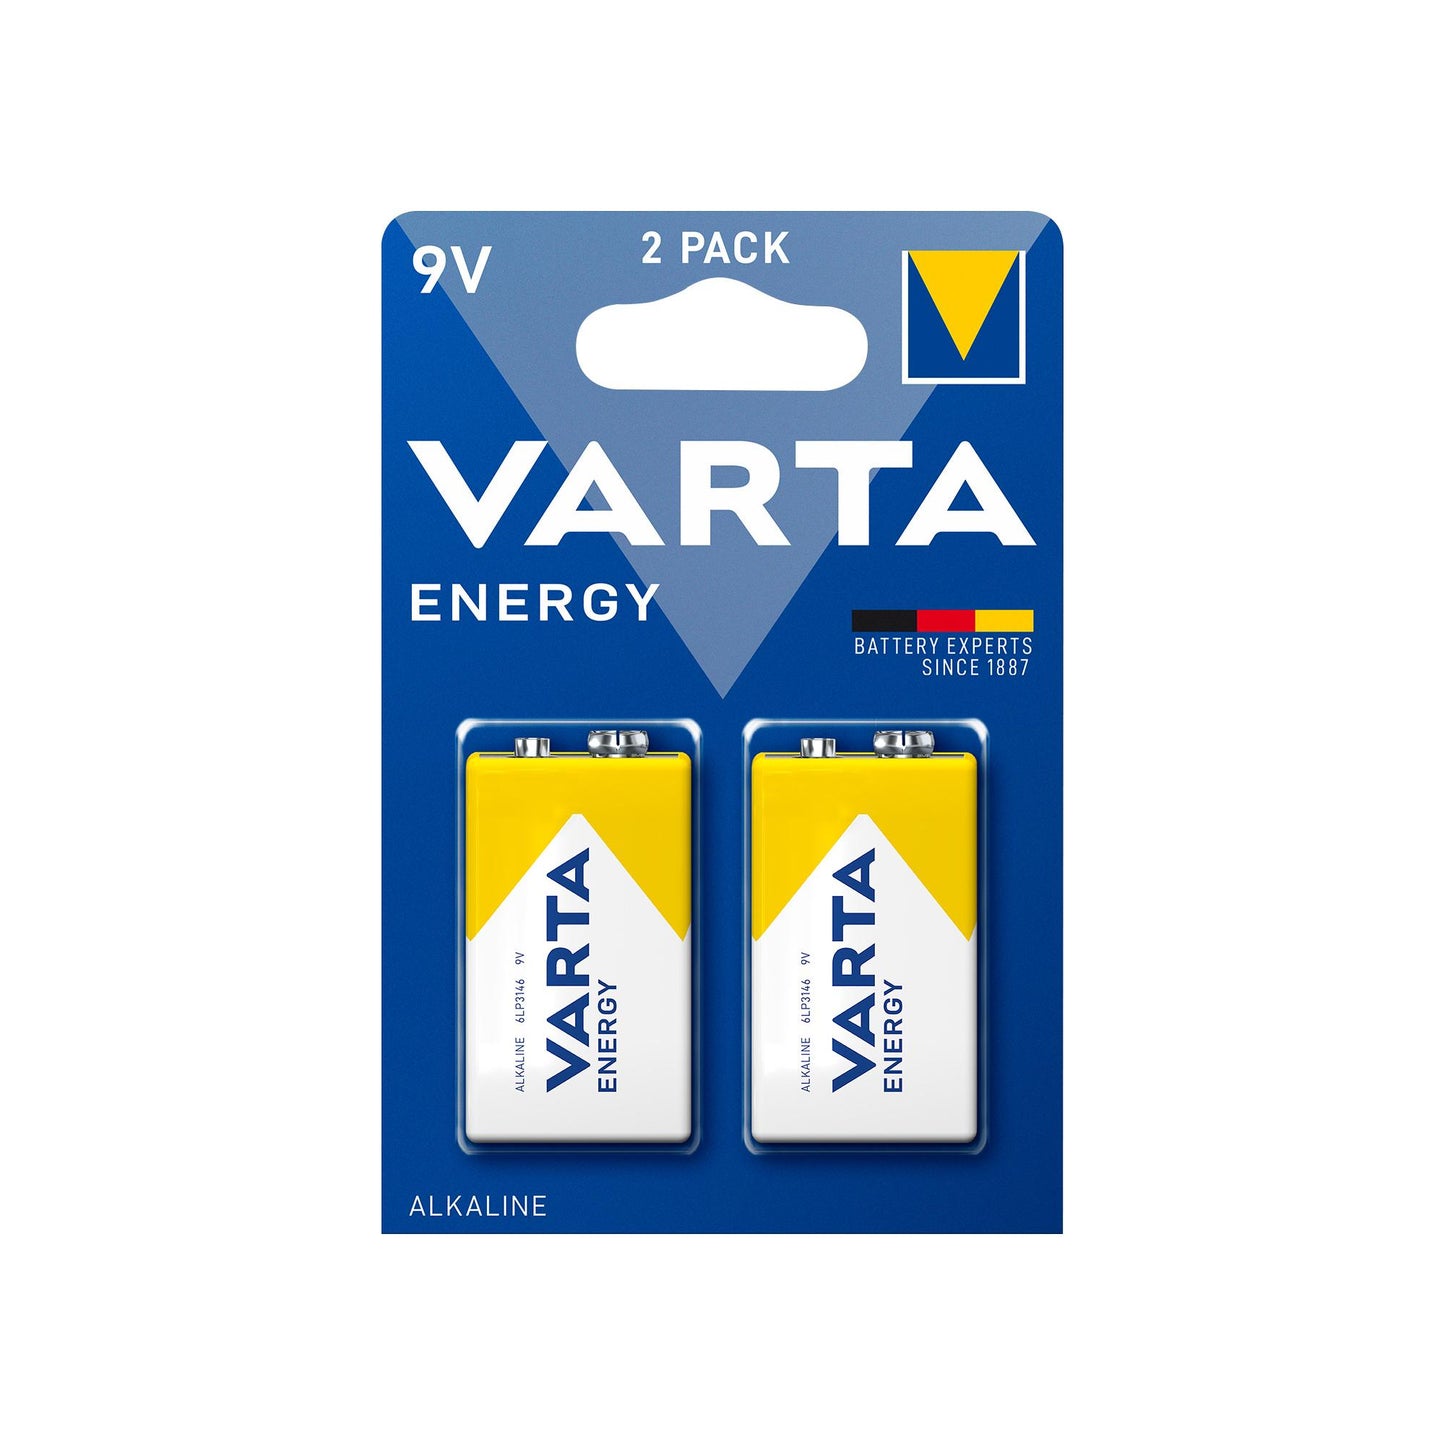 VARTA Batterie Alkaline E-Block 6LR61, 9V Energy, Retail Blister (2-Pack)